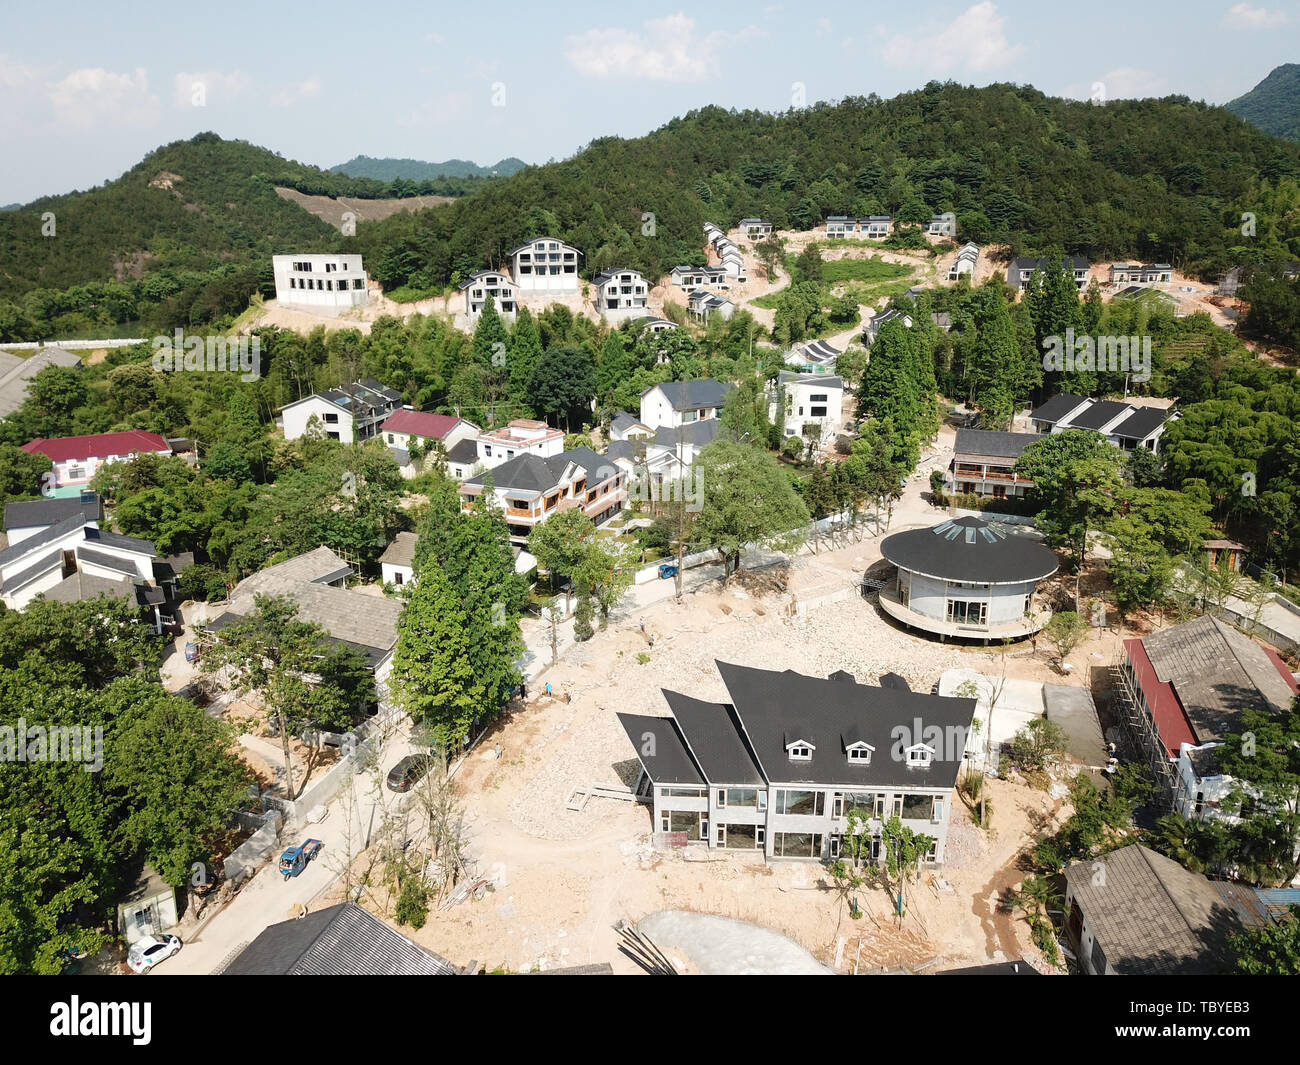 (190604) -- ANJI, le 4 juin 2019 (Xinhua) -- photo aérienne prise le 4 juin 2019 montre Chen Gu's guesthouse en construction de projet à Anji, la Chine de l'est la province de Zhejiang. Chen Gu, né en 1971, a travaillé dans l'industrie du design depuis plus de 20 ans. Il a commencé à re-design Maisons de village après de retourner dans sa ville d'Anji. En 2014, Chen rénové un groupe de maisons avec l'appui du gouvernement local. Depuis lors, cinq établissements ont été rénovés et mis en service. Sur son effort, le quartier résidentiel une fois tombé est progressivement devenu un village guesthouse équipée Banque D'Images